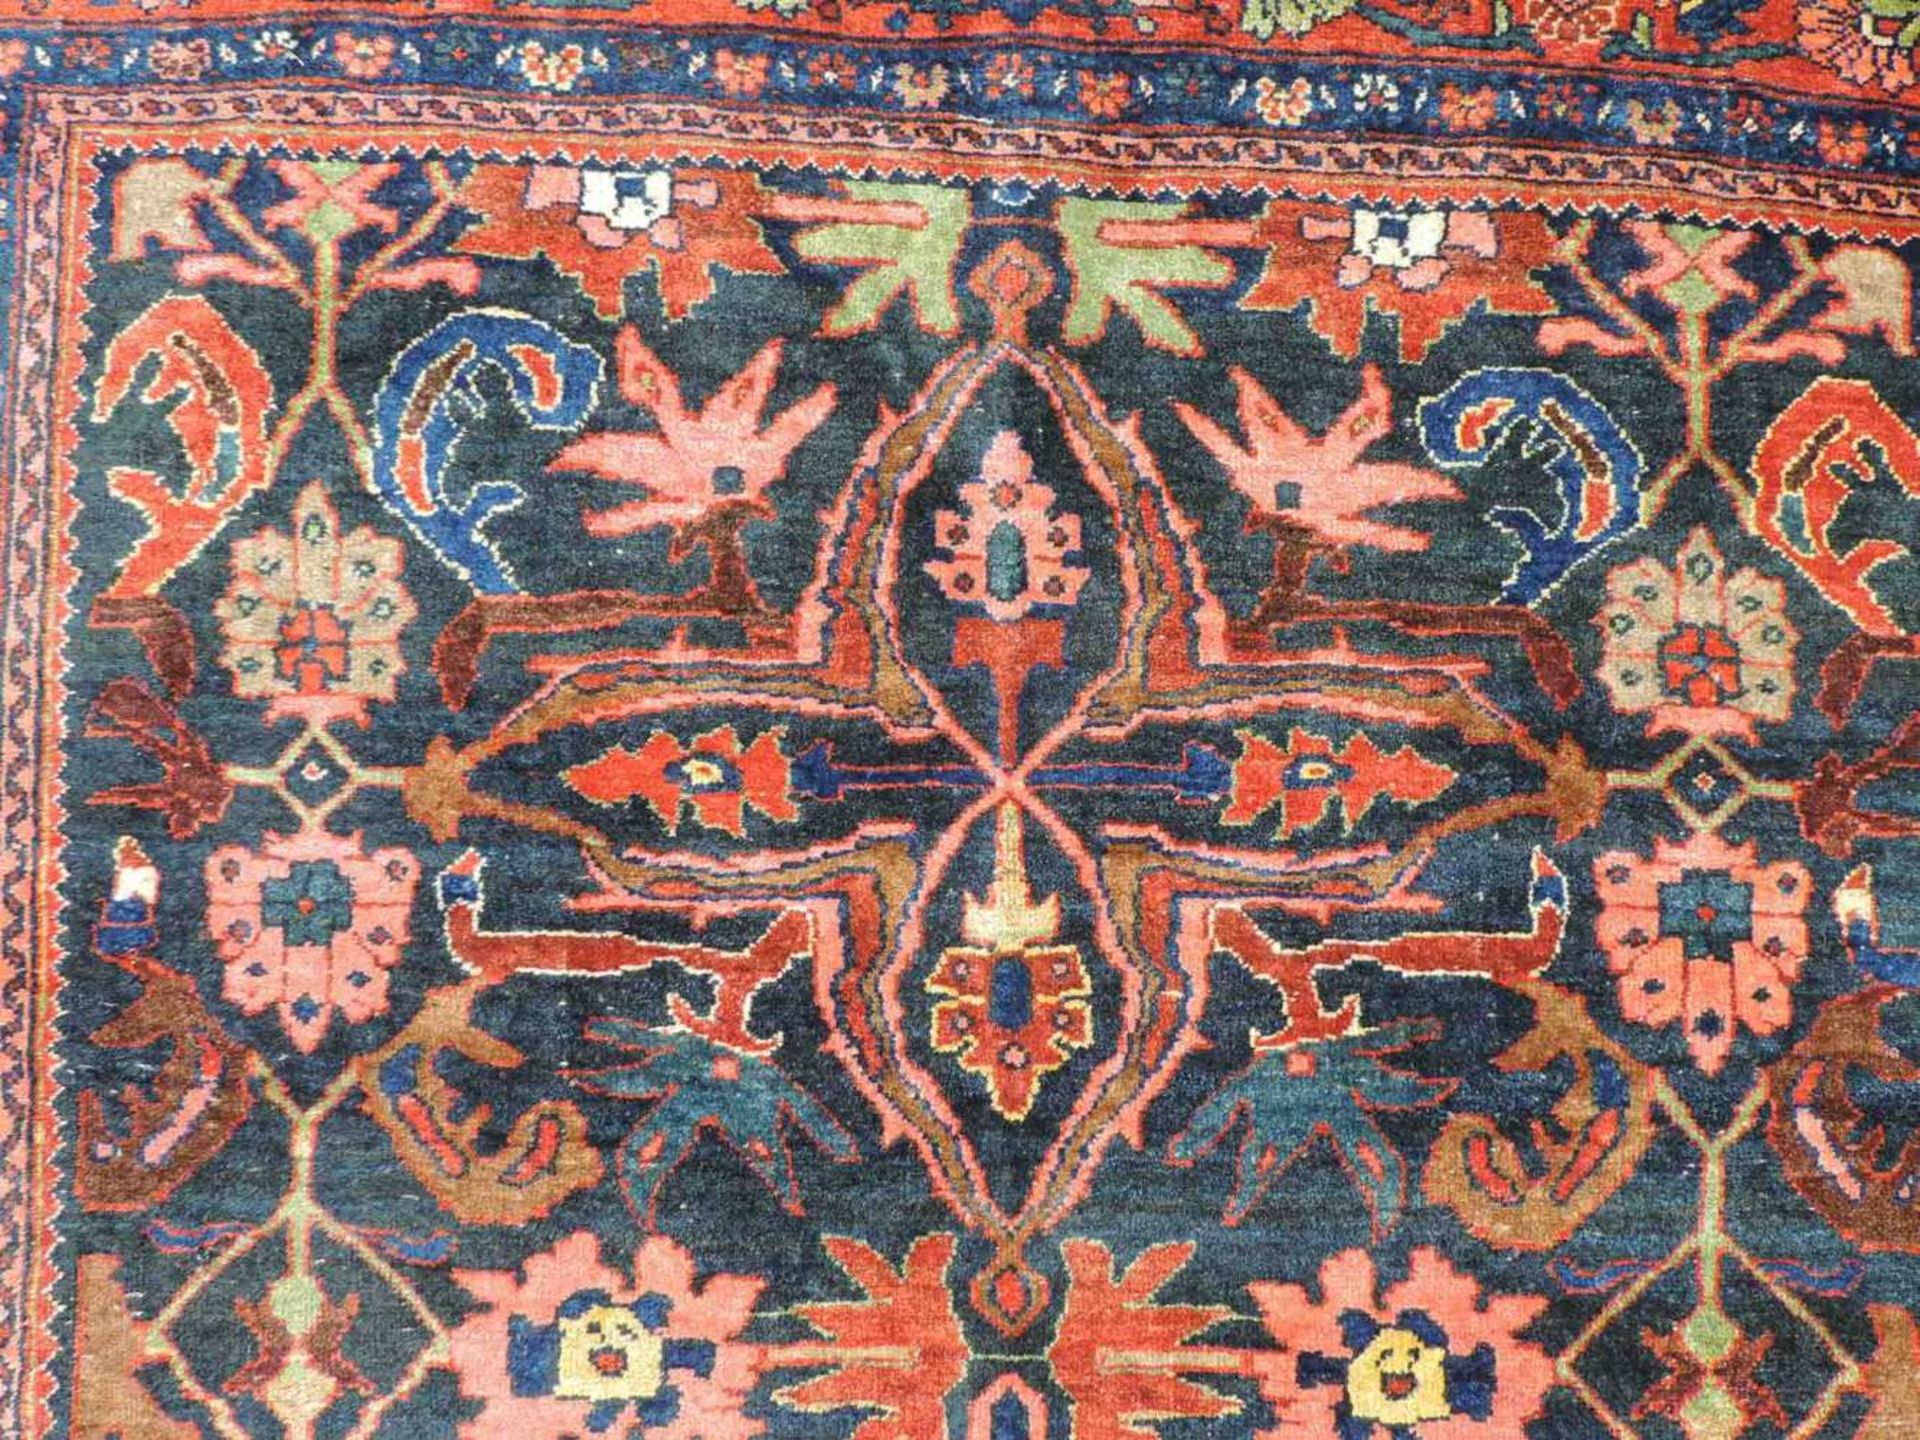 Bidjar Dorfteppich, Iran. Antik, um 1900. 214 cm x 160 cm. Handgeknüpft in Persien. Noch Wolle auf - Image 8 of 11